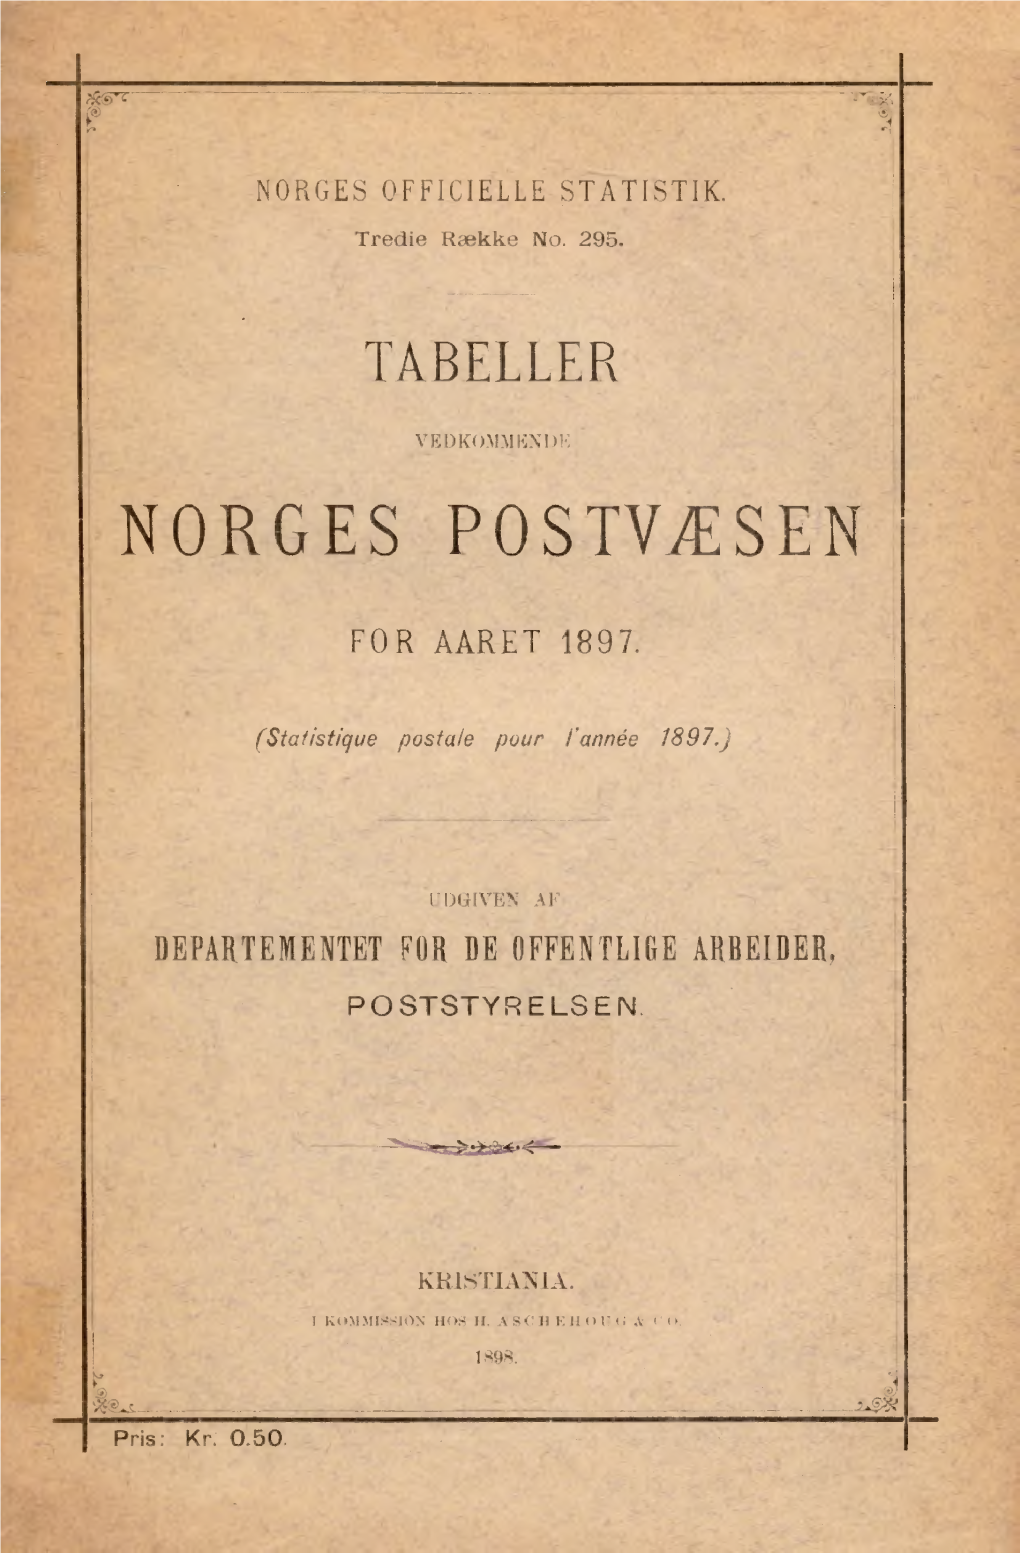 Tabeller Vedkommende Norges Postvæsen for Aaret 1897